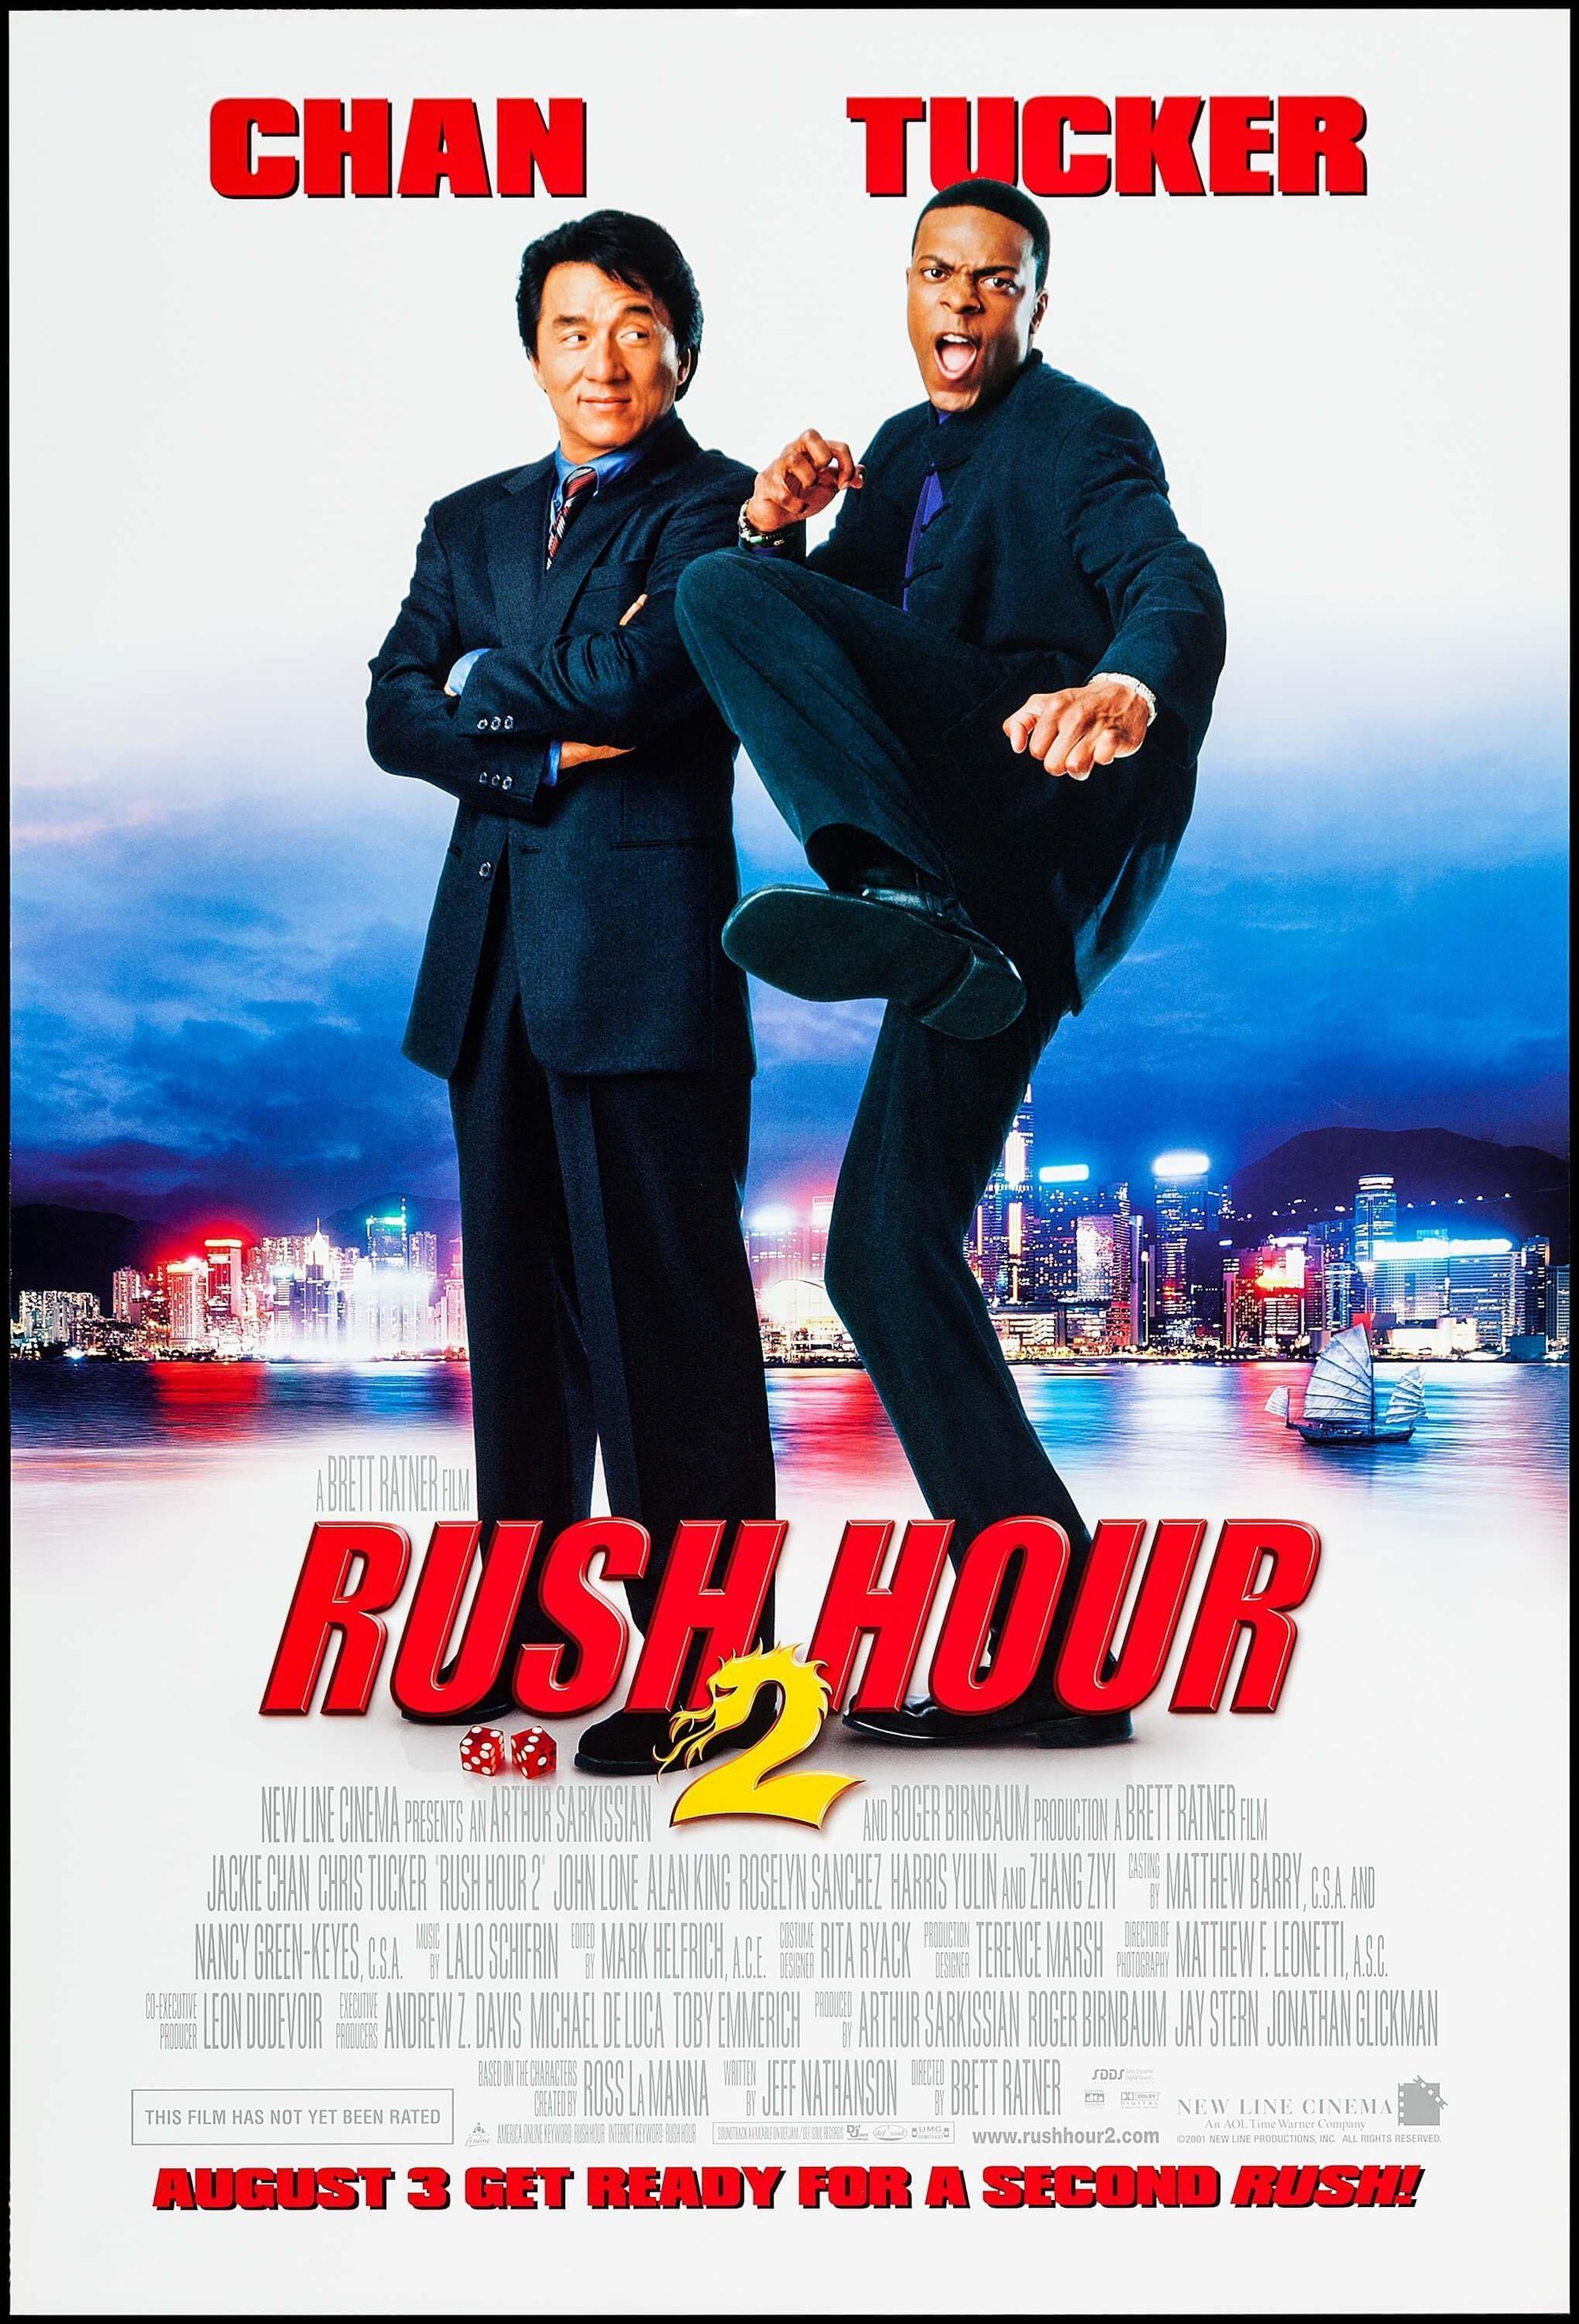 rushing hour movie